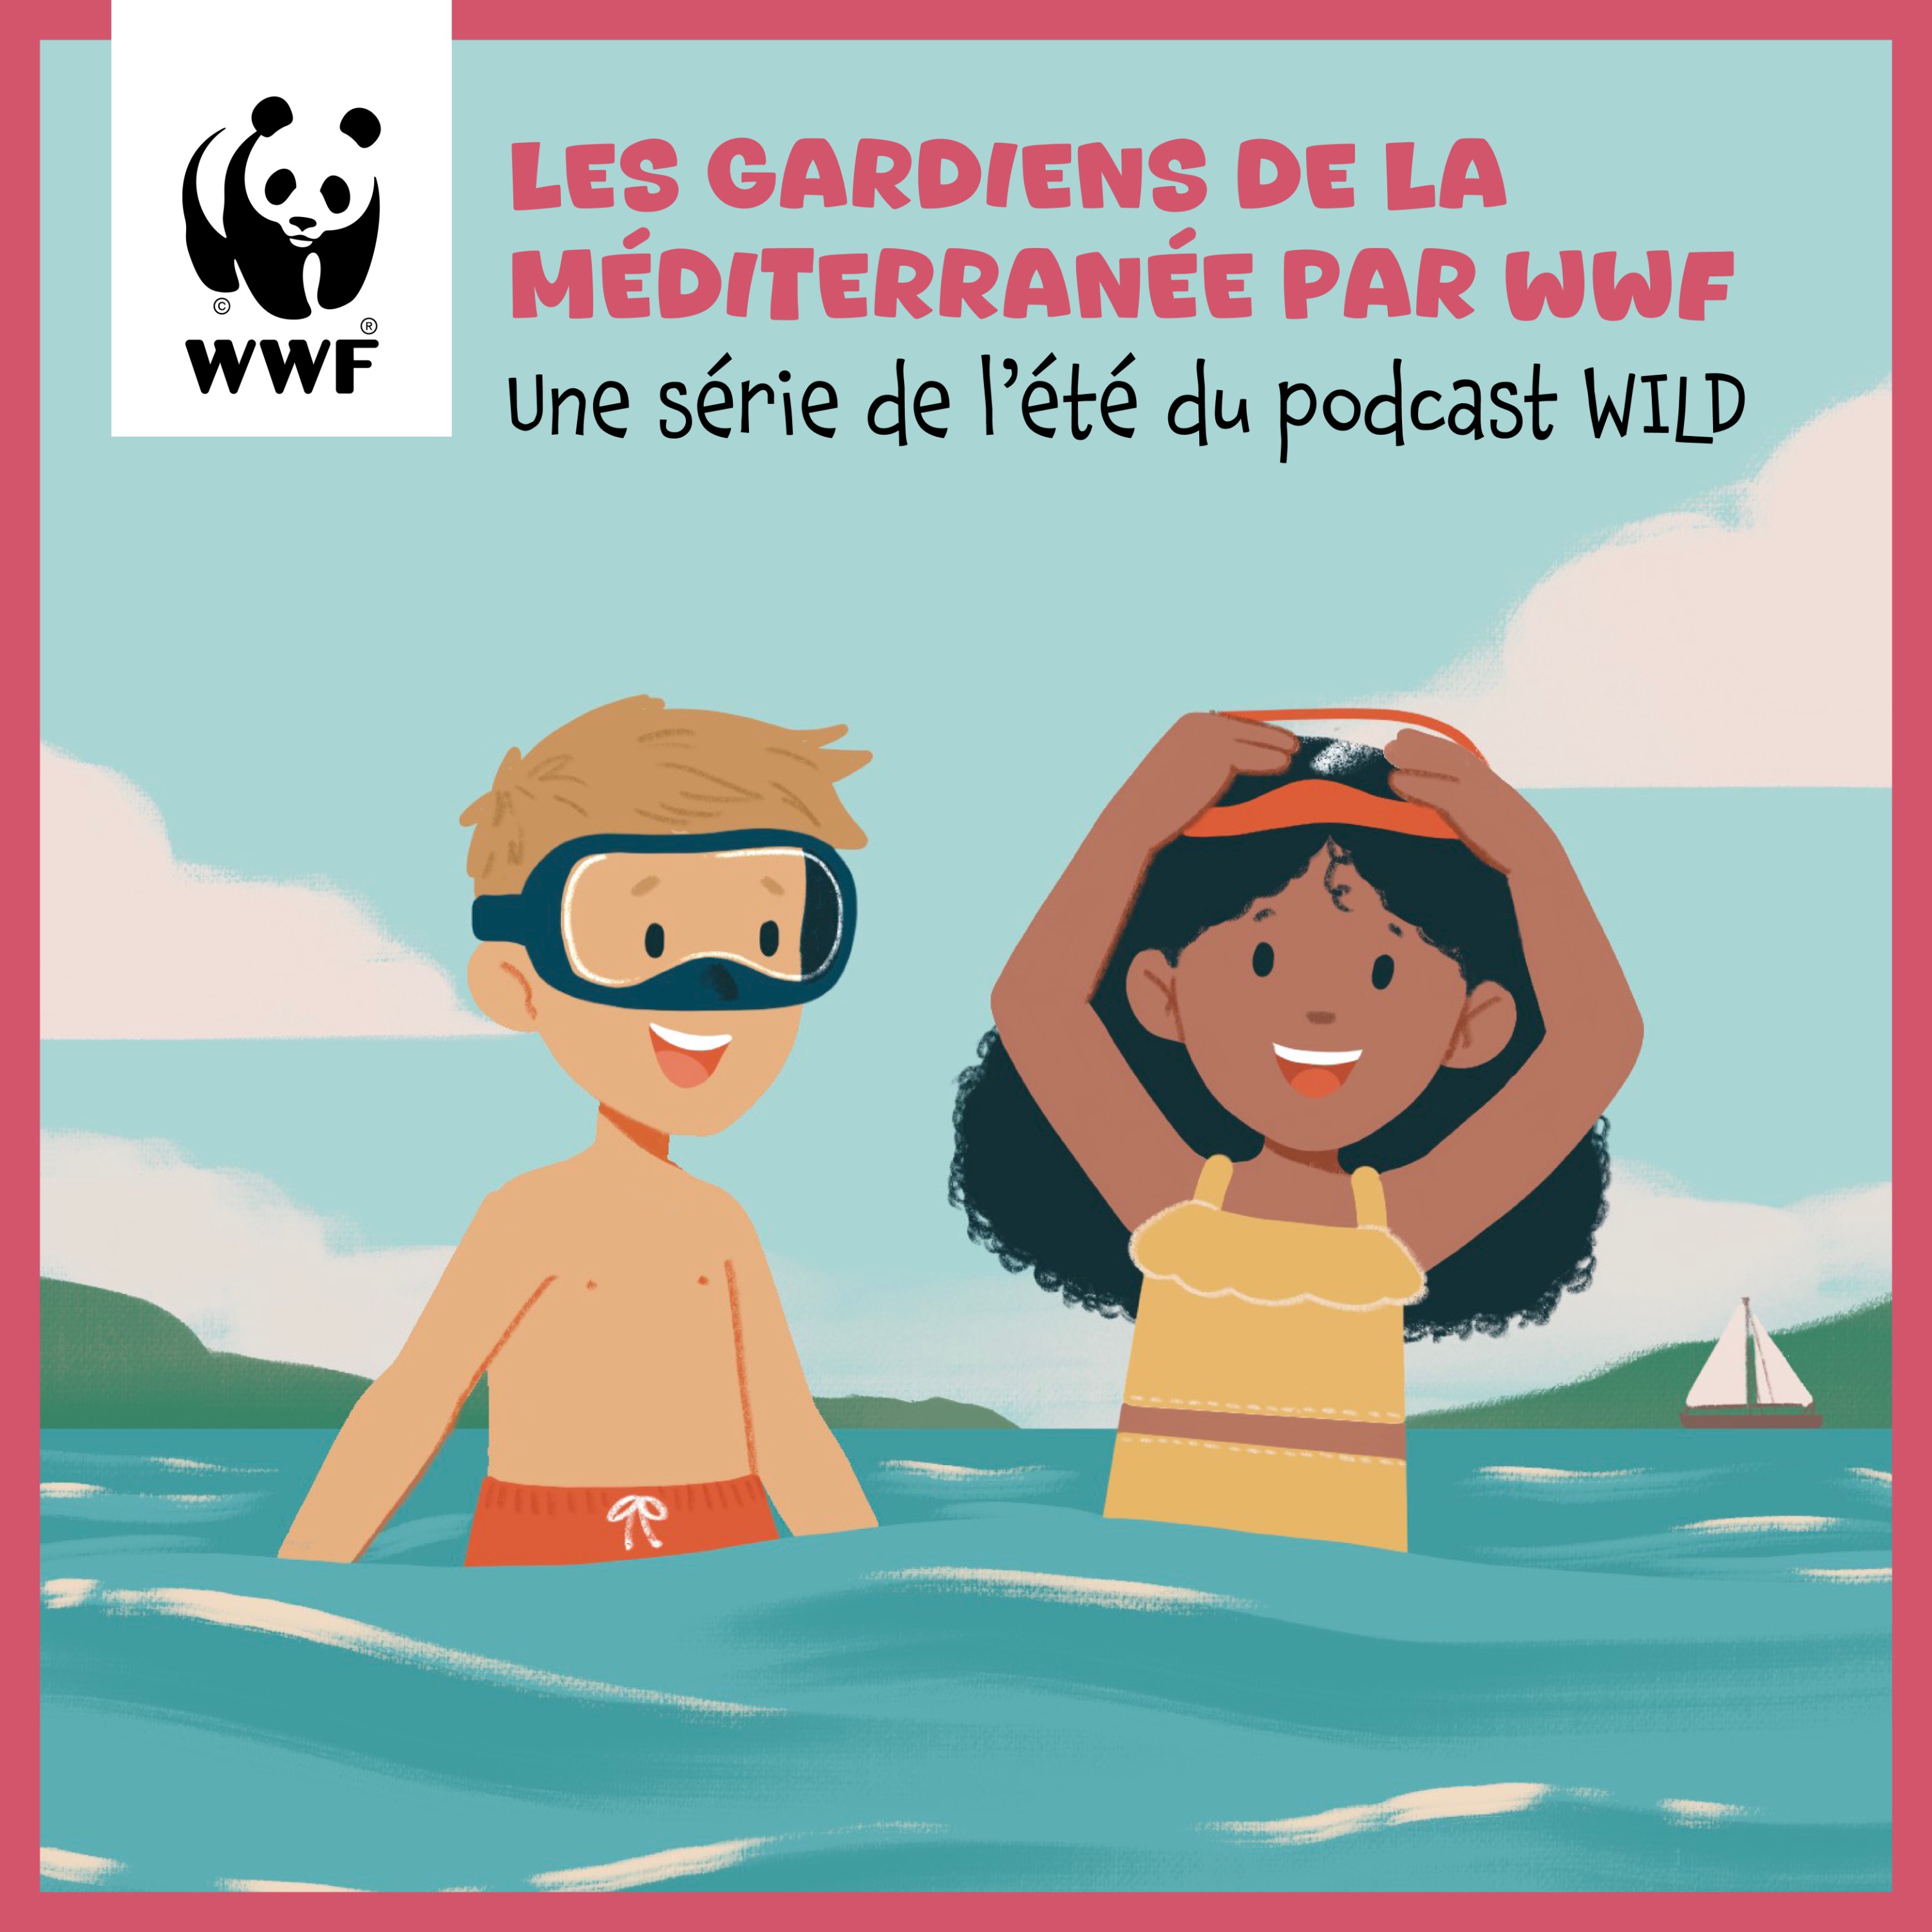 La daurade, le caméléon des mers / Emission 3 du WWF